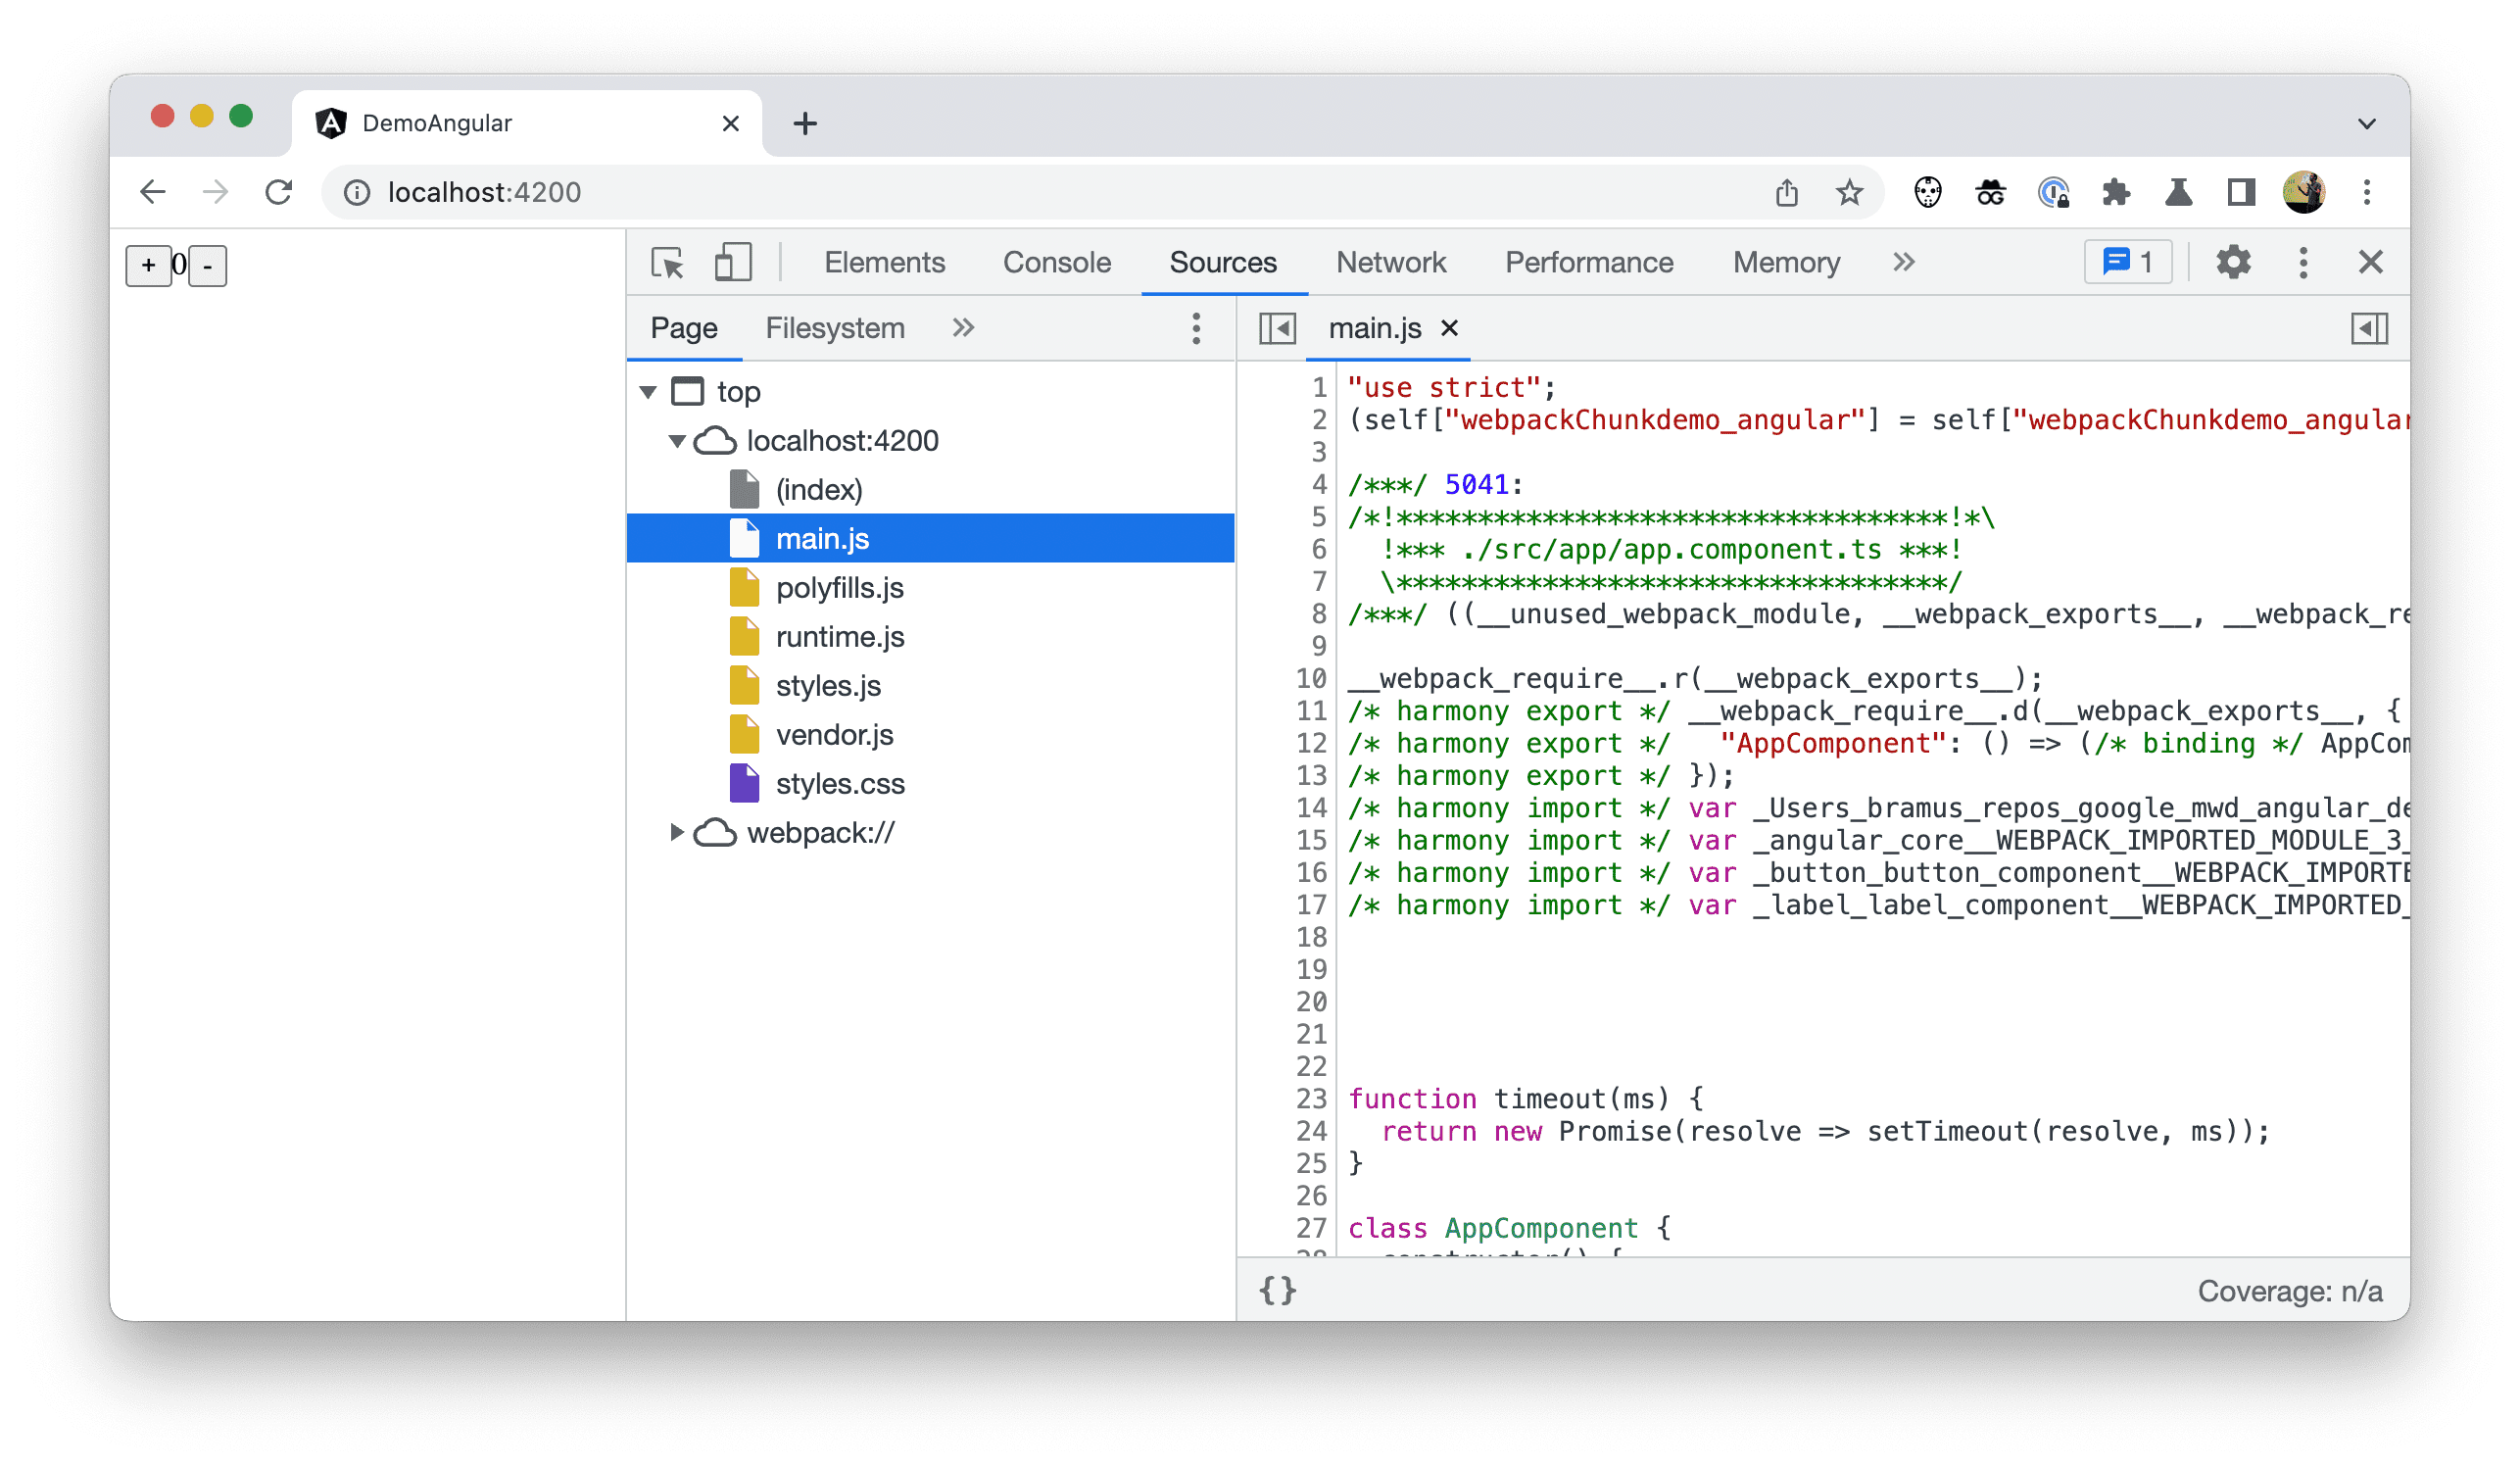 Chrome DevTools 中的文件树的屏幕截图，其中显示了已部署的代码。